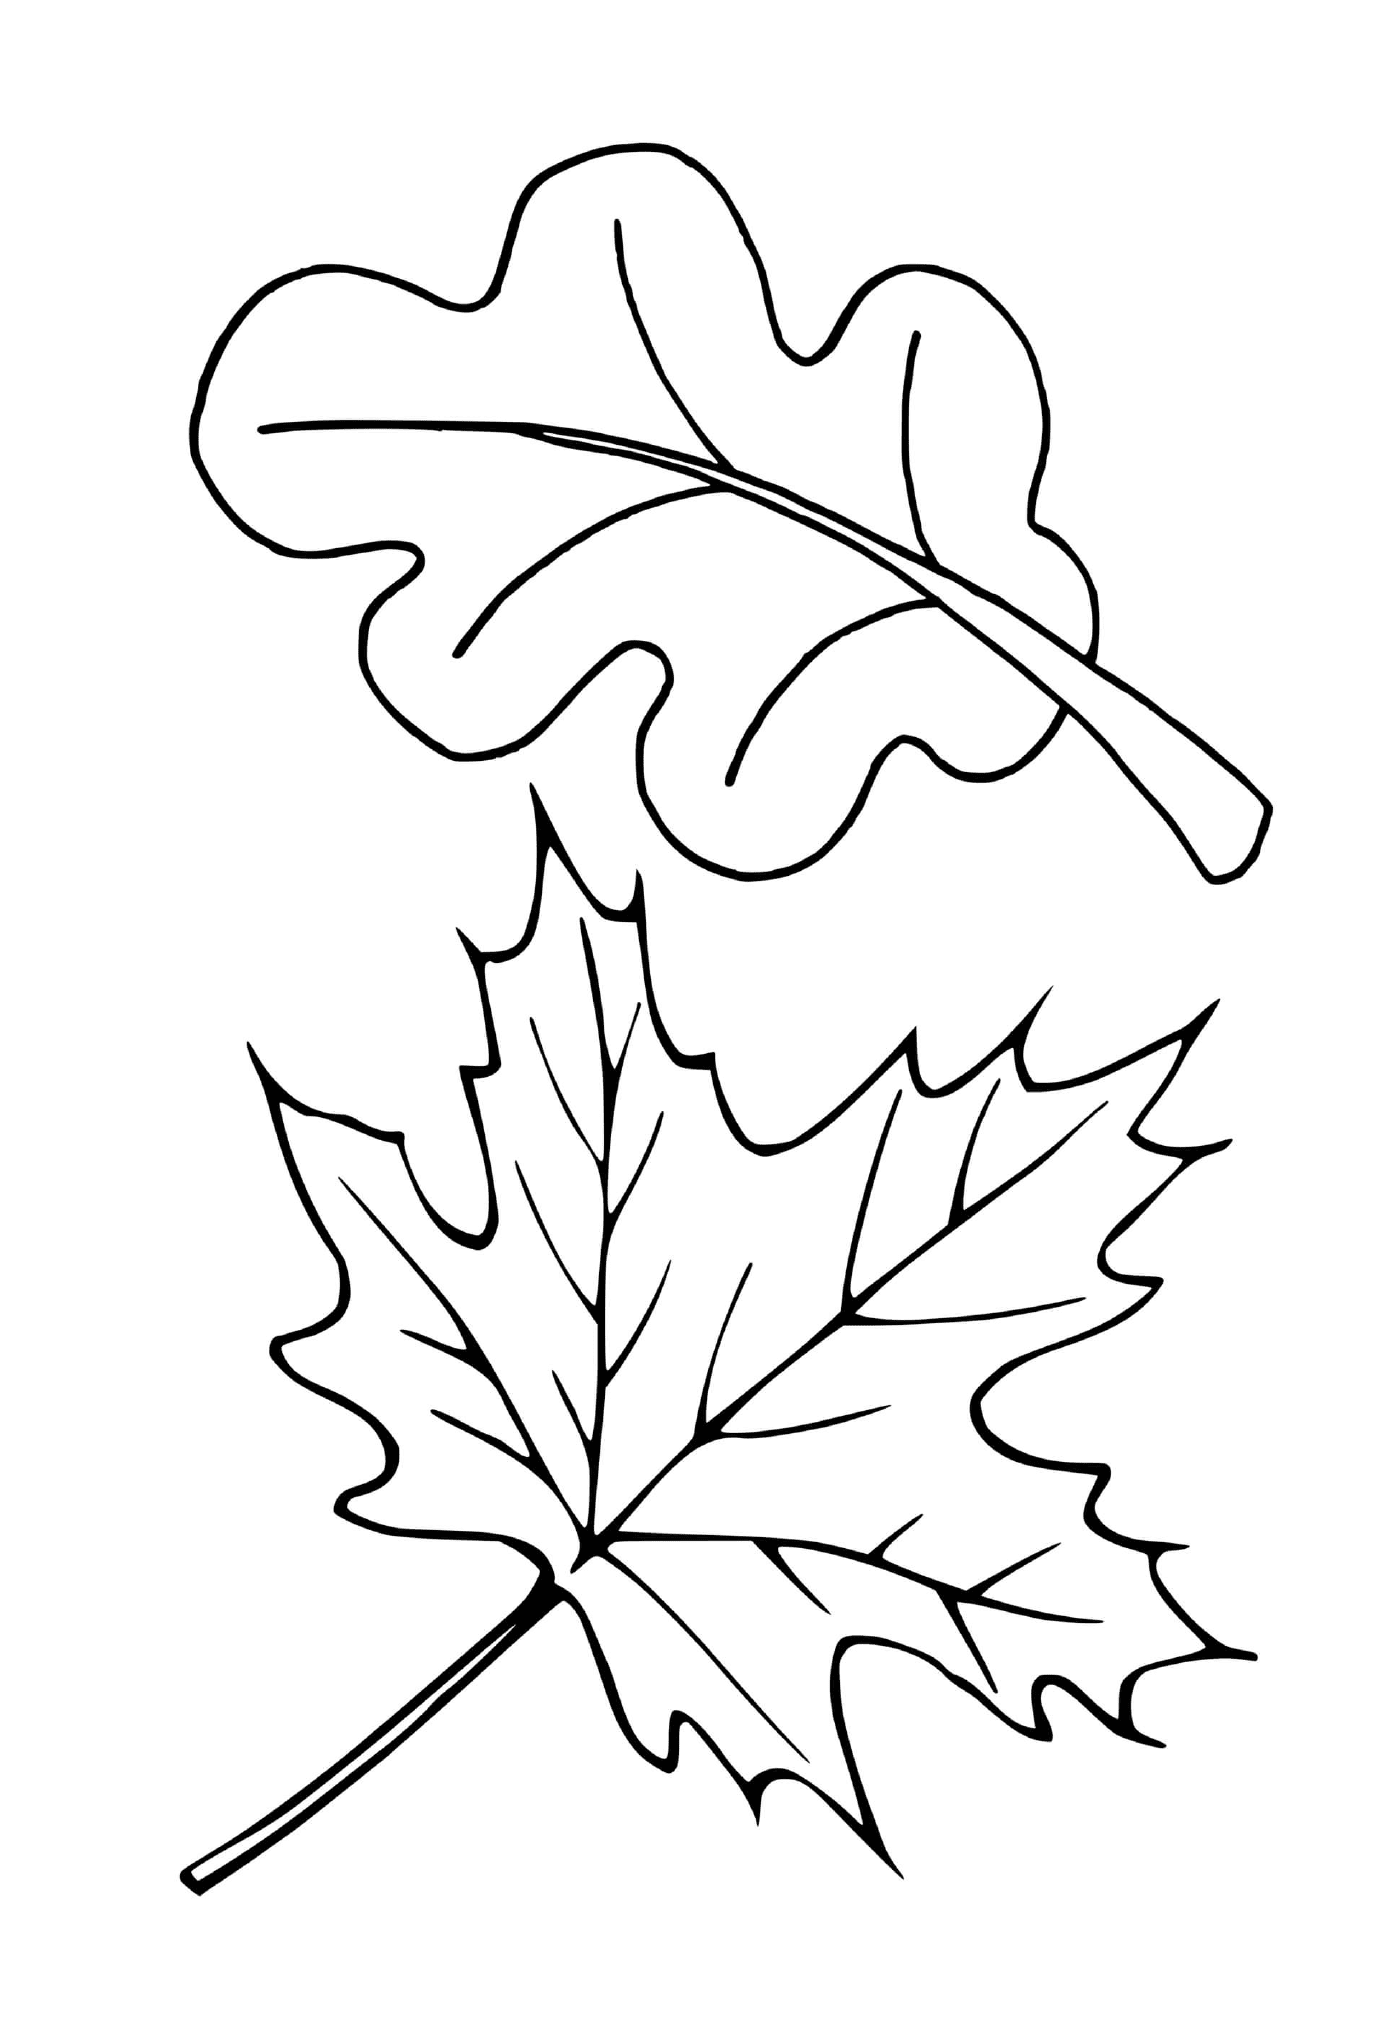  Dos hojas diferentes de árboles (rojo, roble) 